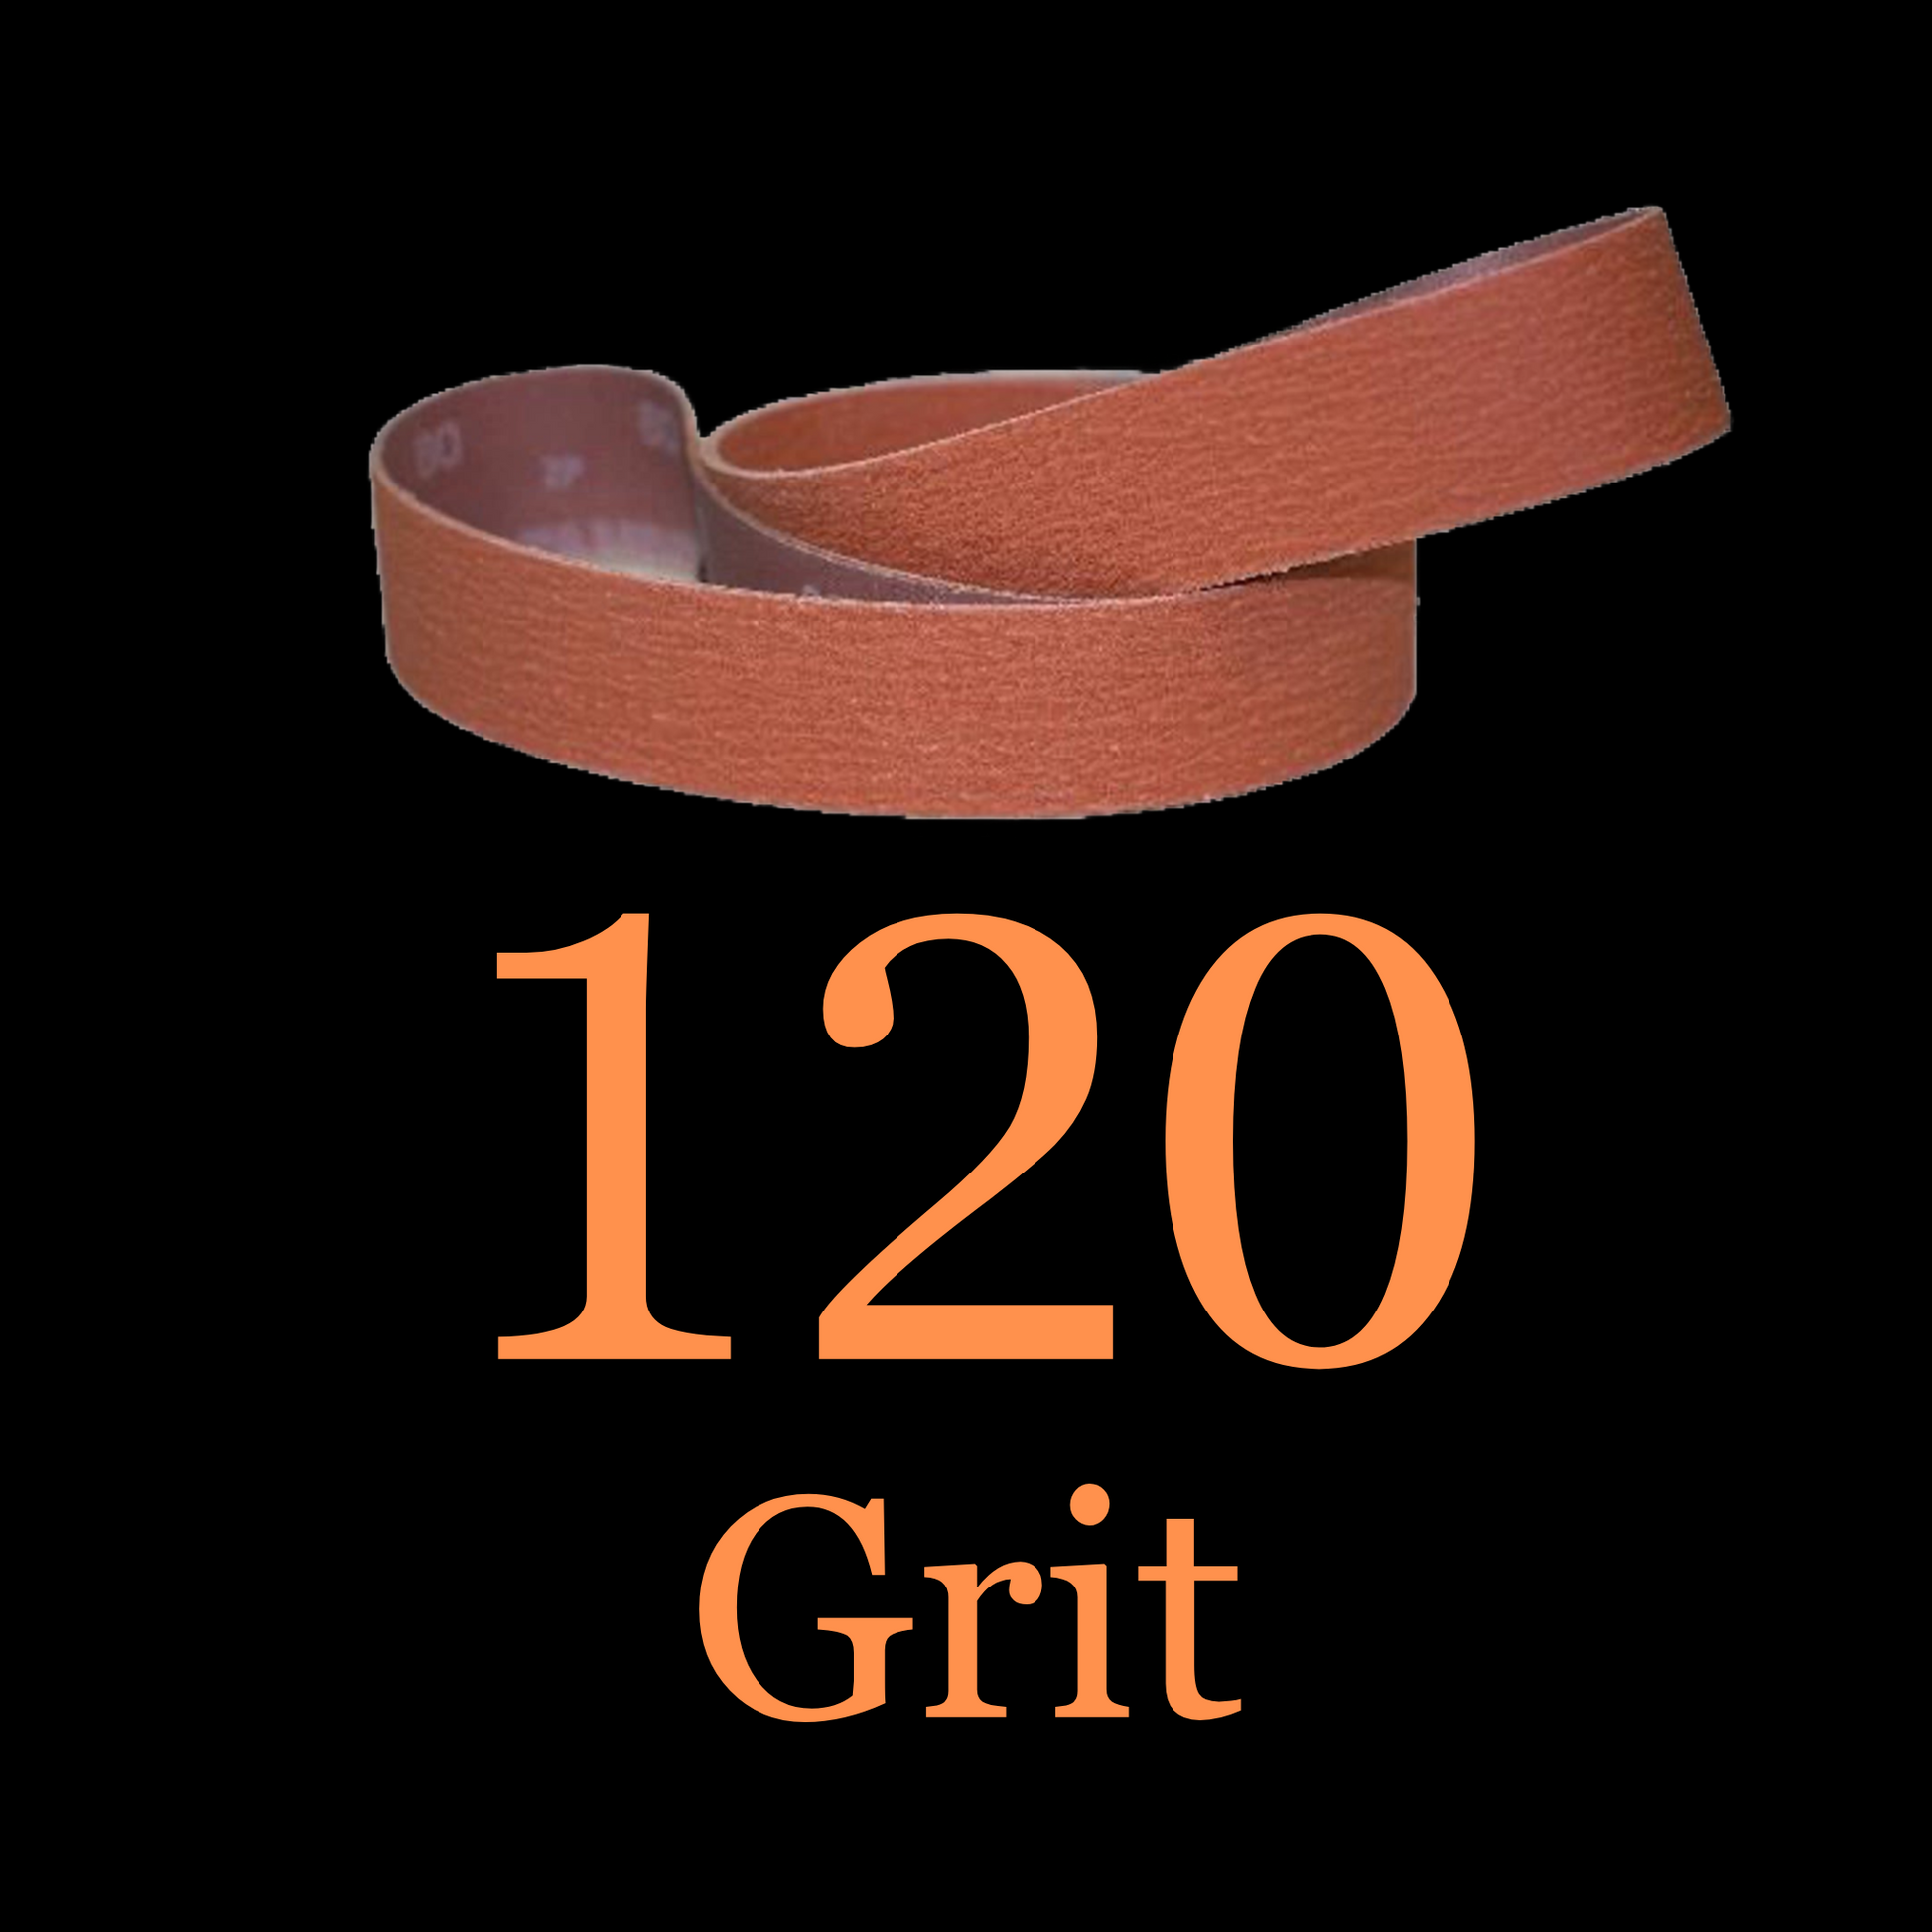 2” x 36” Ceramic Blaze Grinder Belt 120 Grit